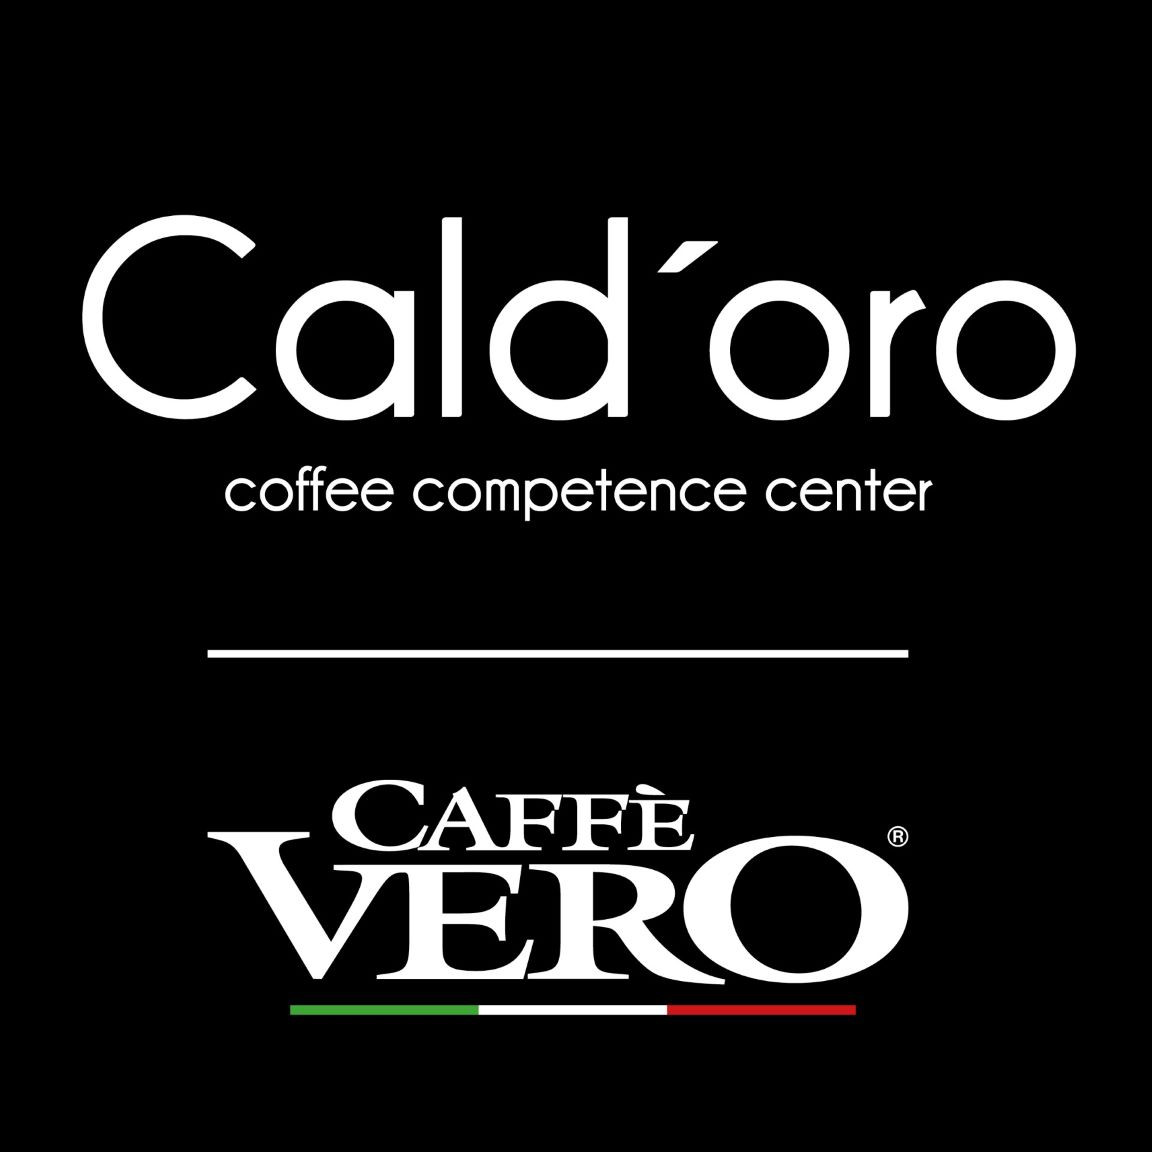 Caldoro Shop